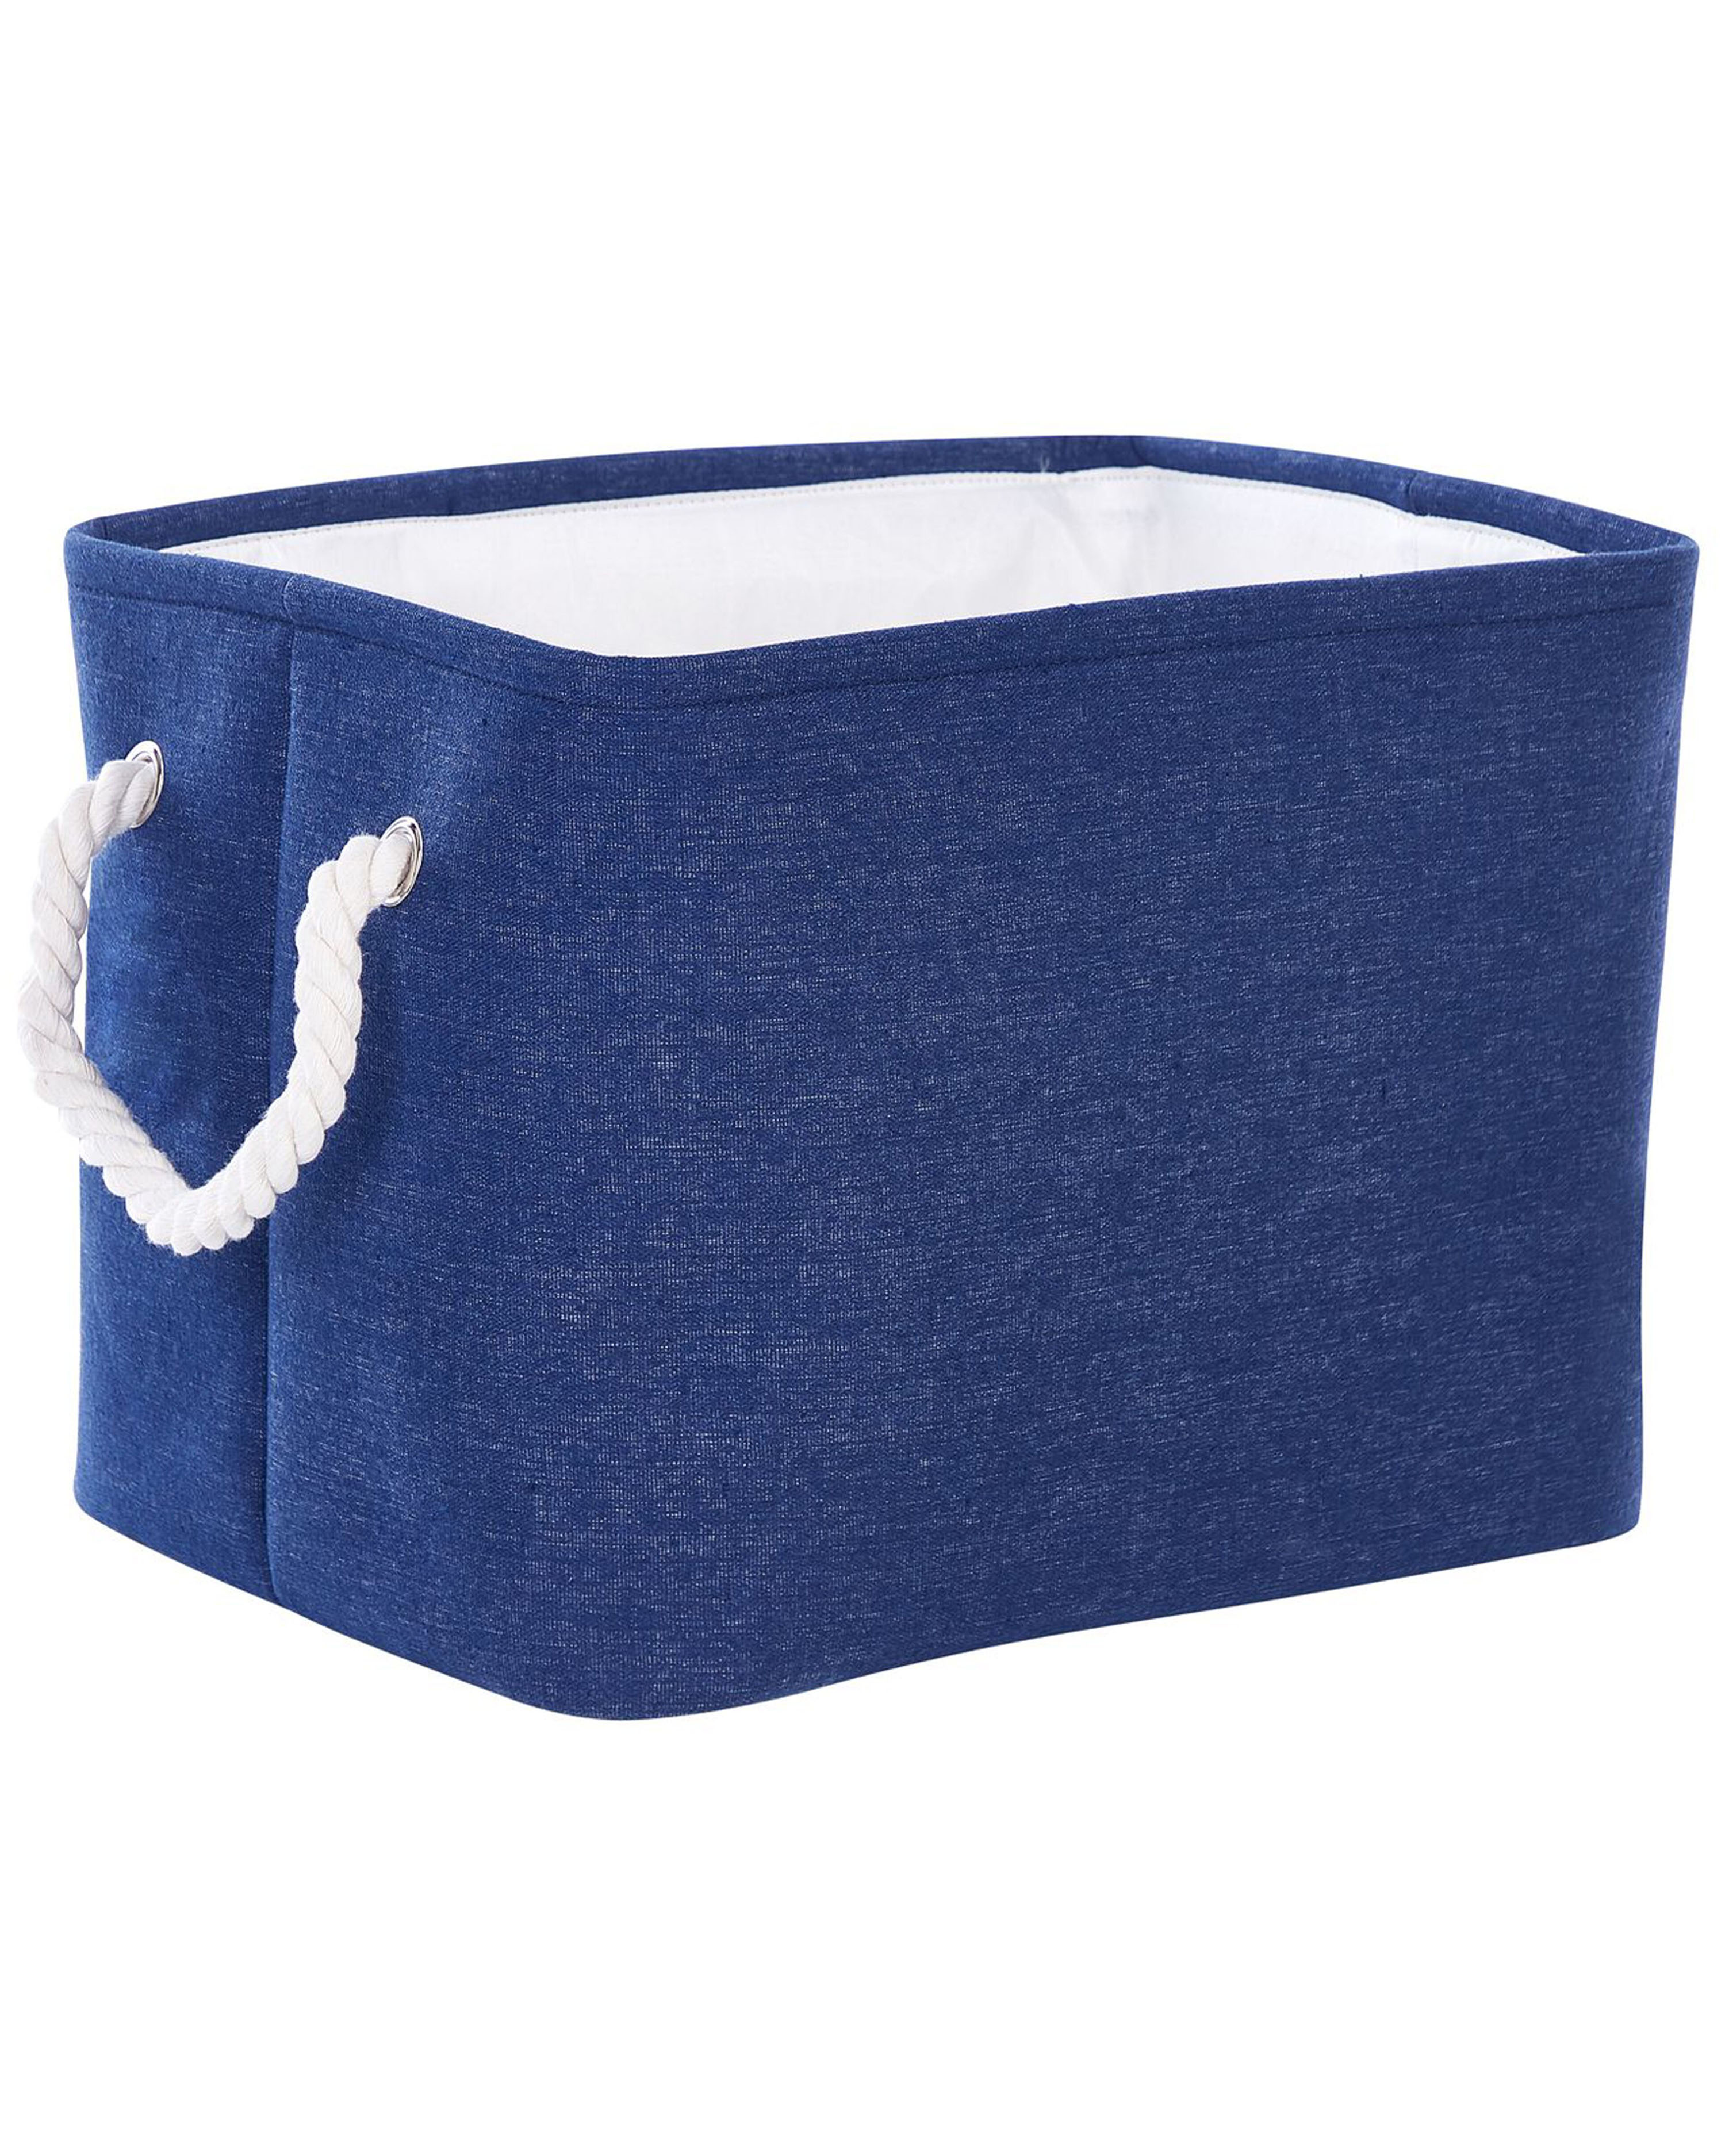 Conjunto de 3 cestas de poliéster azul marino/blanco DARQAB_849744